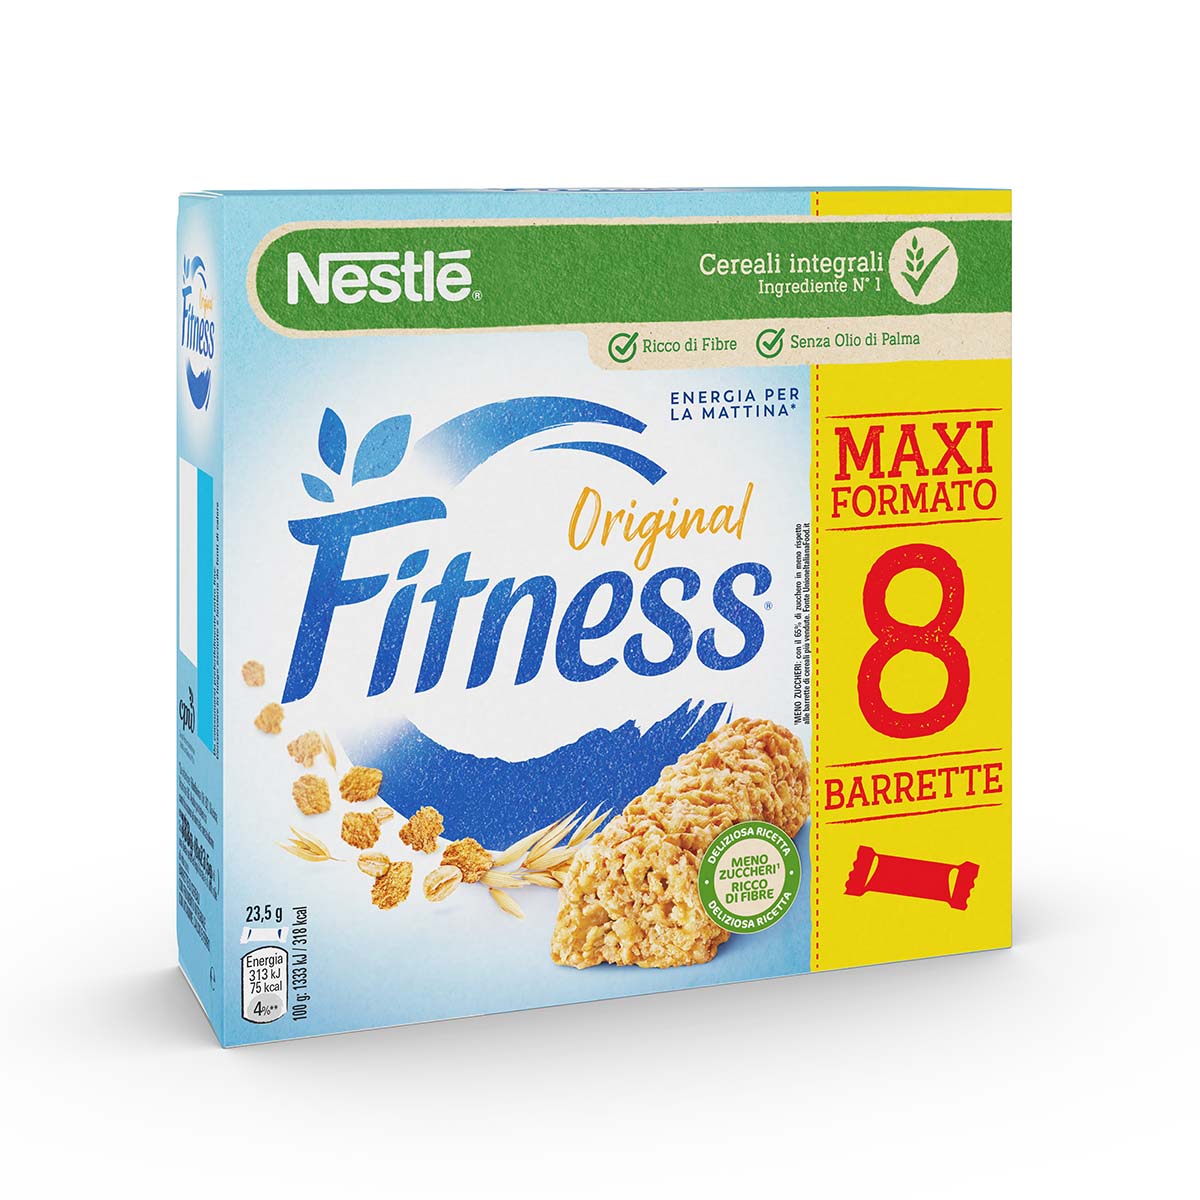 Fitness ORIGINAL Barrette di cereali con frumento integrale, con vitamine, calcio e ferro x8